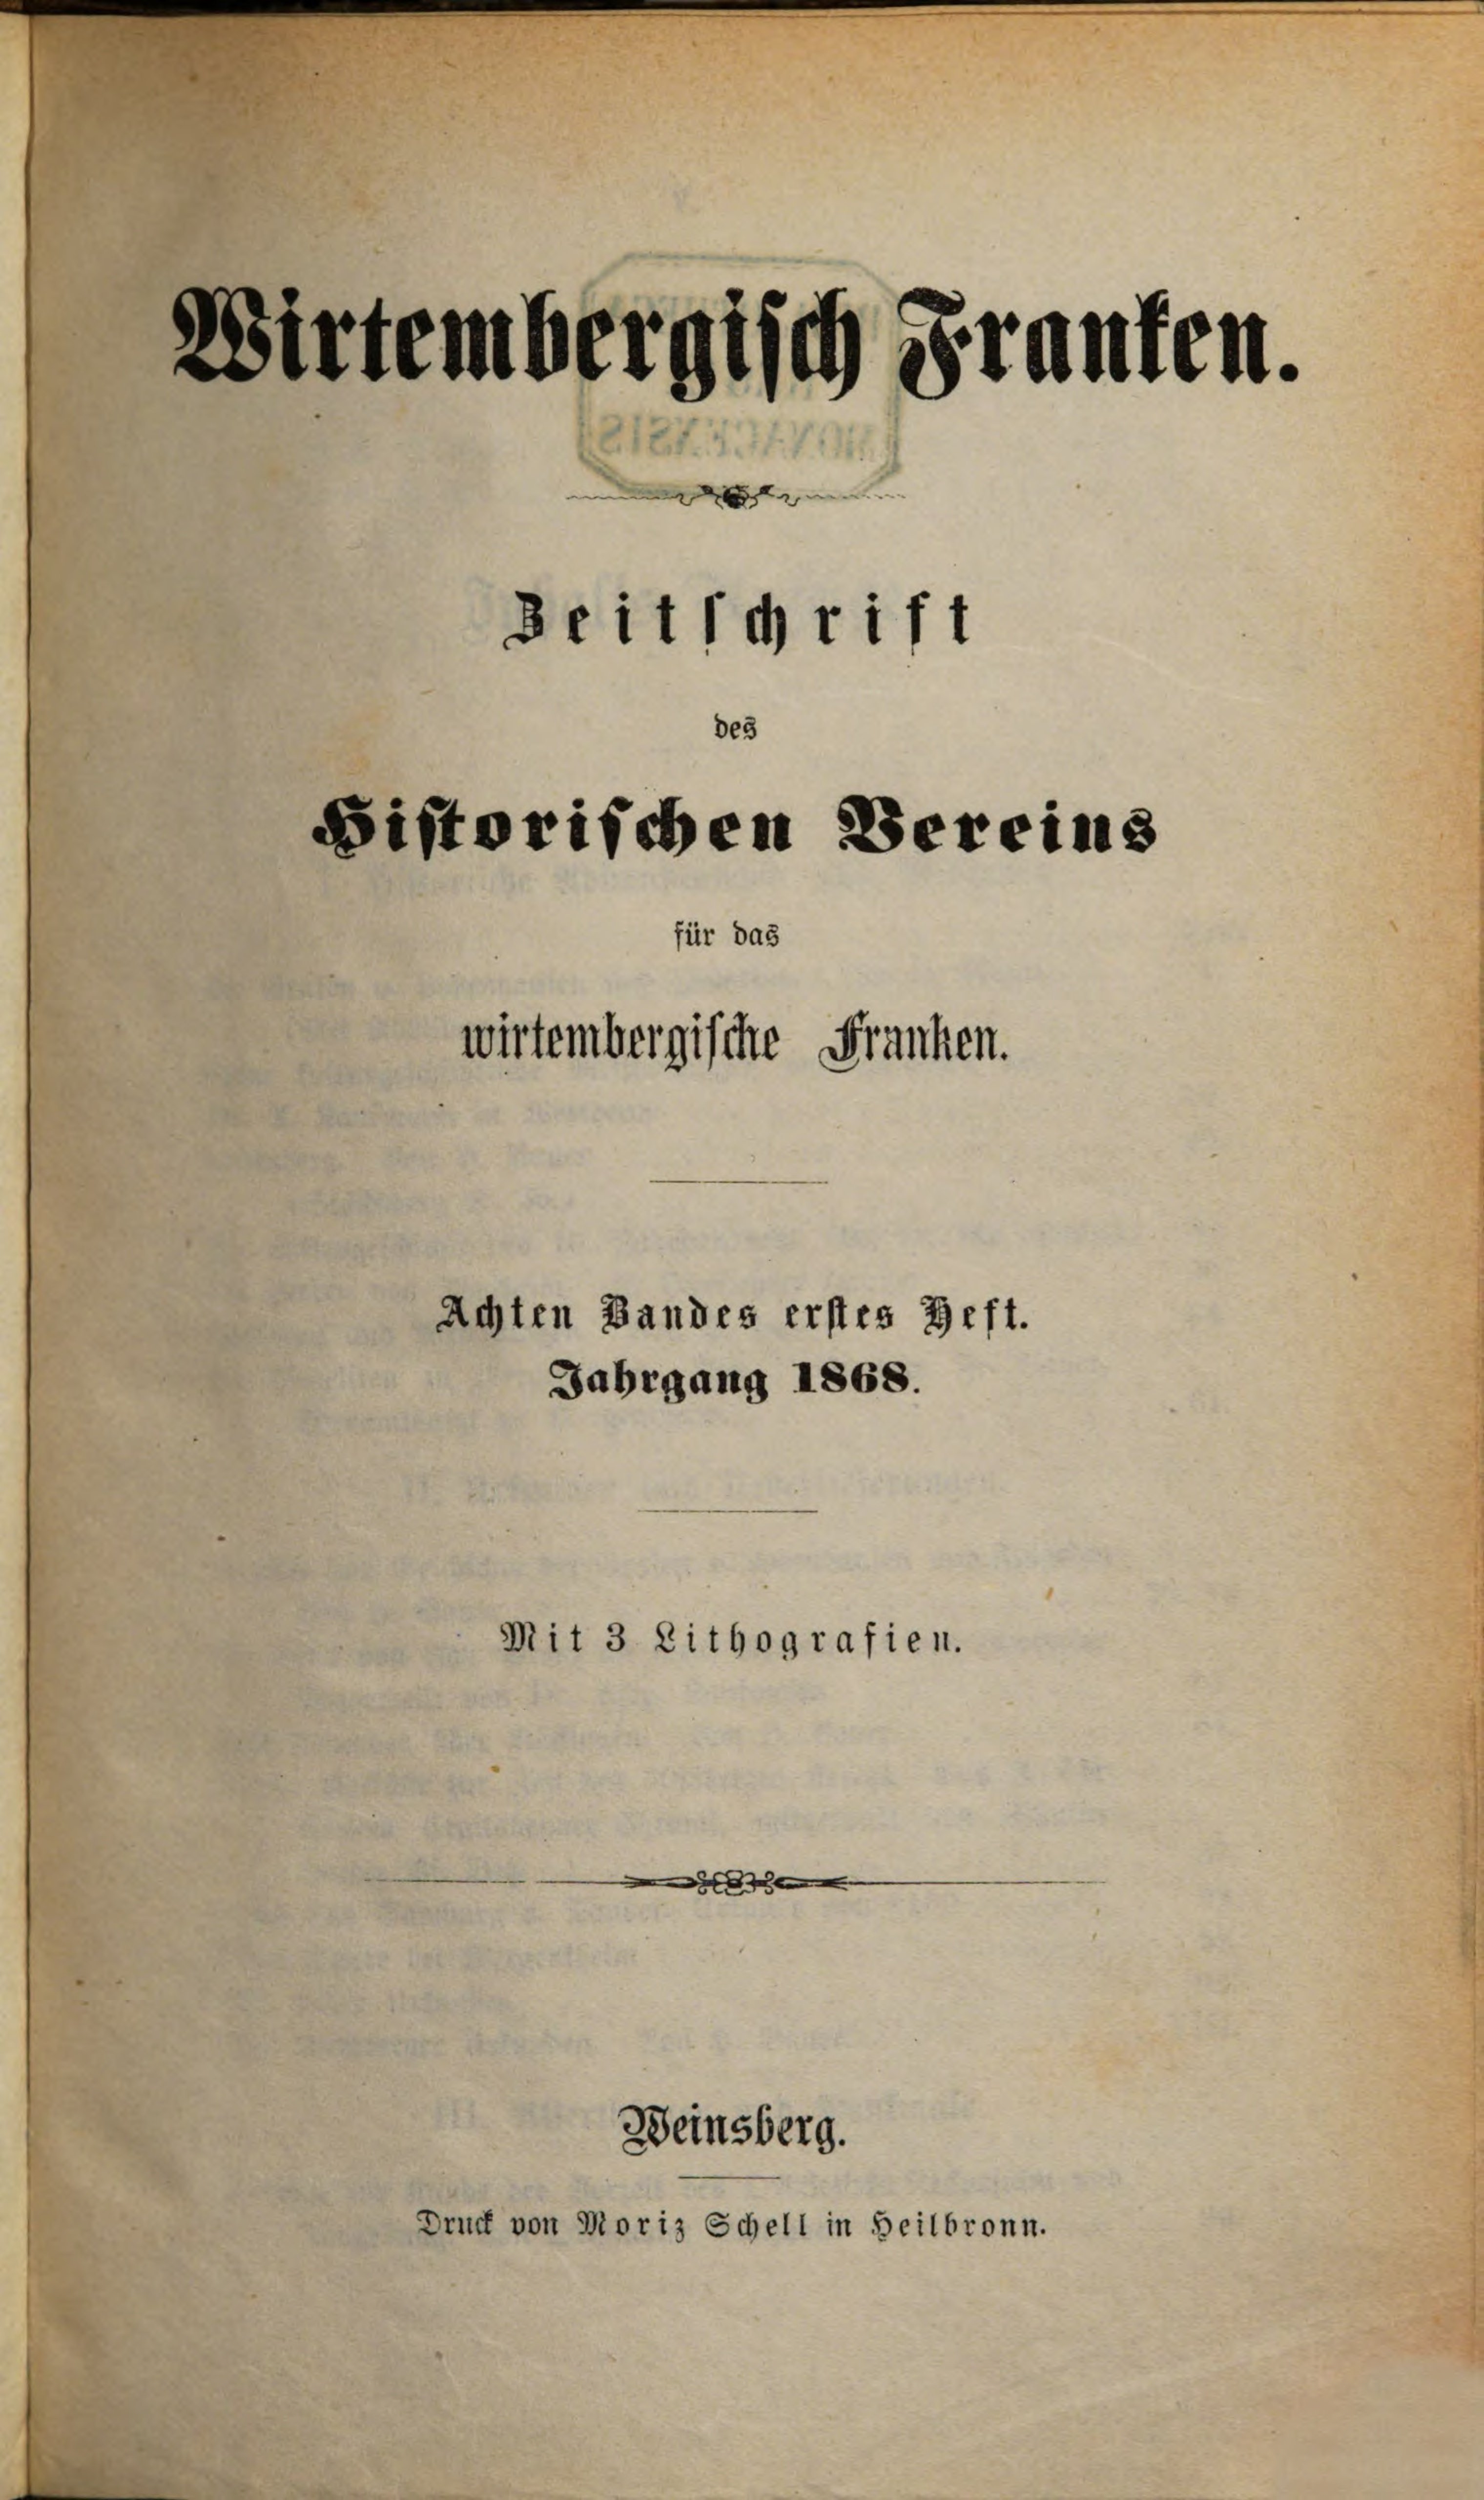                     Ansehen Bd. 8 Nr. 1 (1868): Zeitschrift des Historischen Vereins für das Württembergische Franken
                